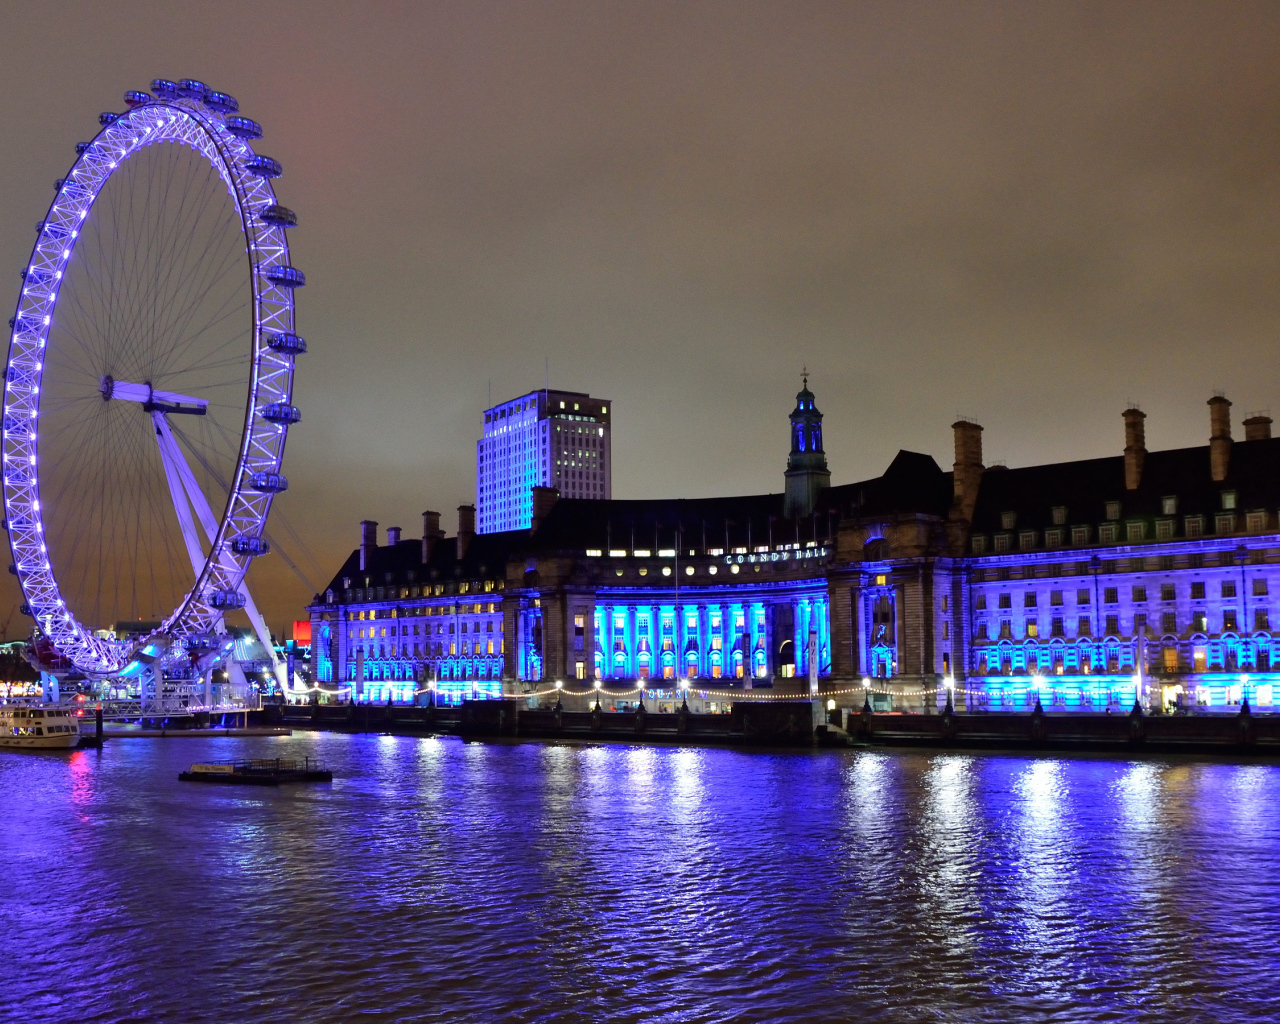 Колесо обозрения у воды ночью, Лондон